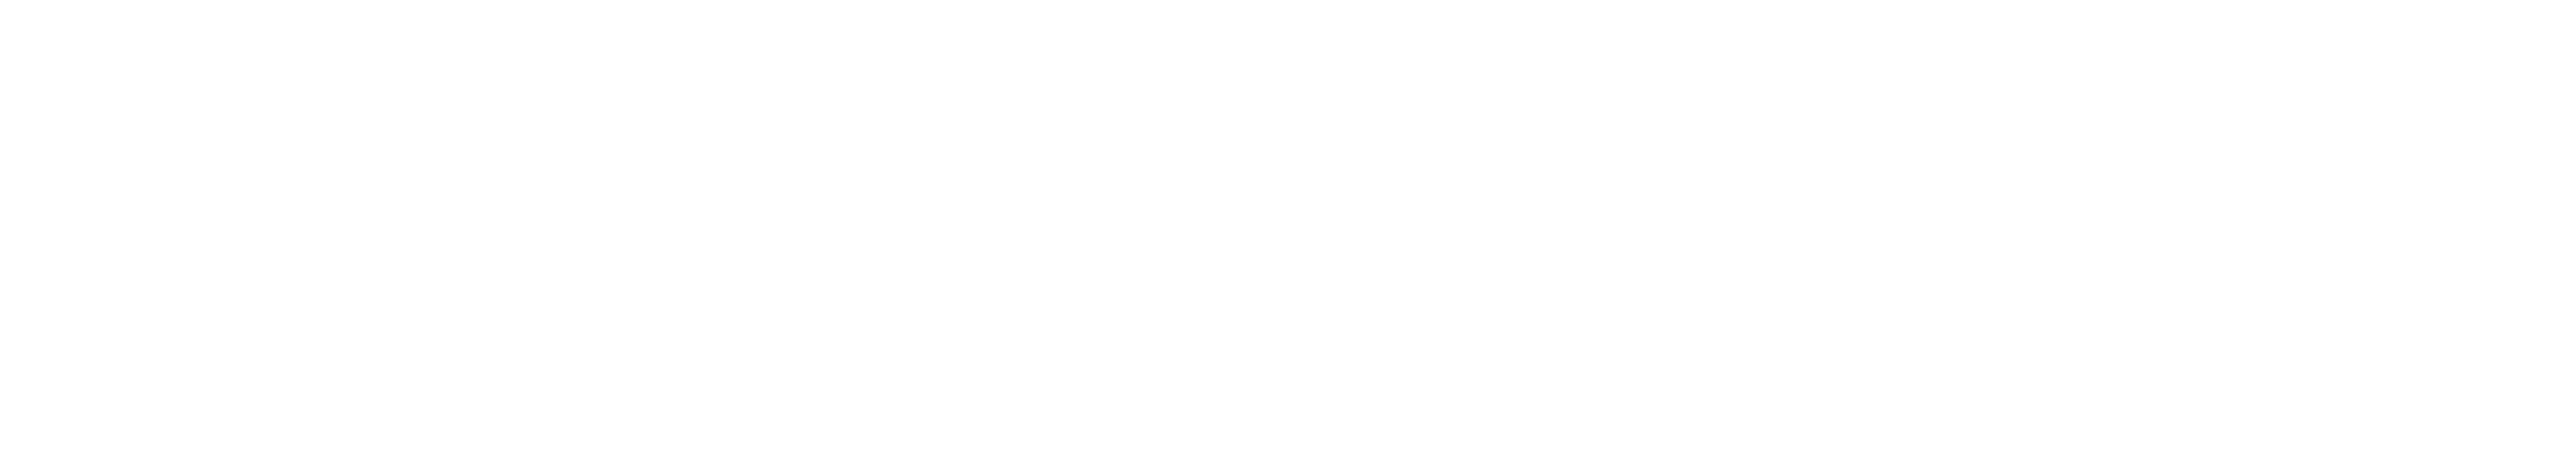 AppOmni-logo-white